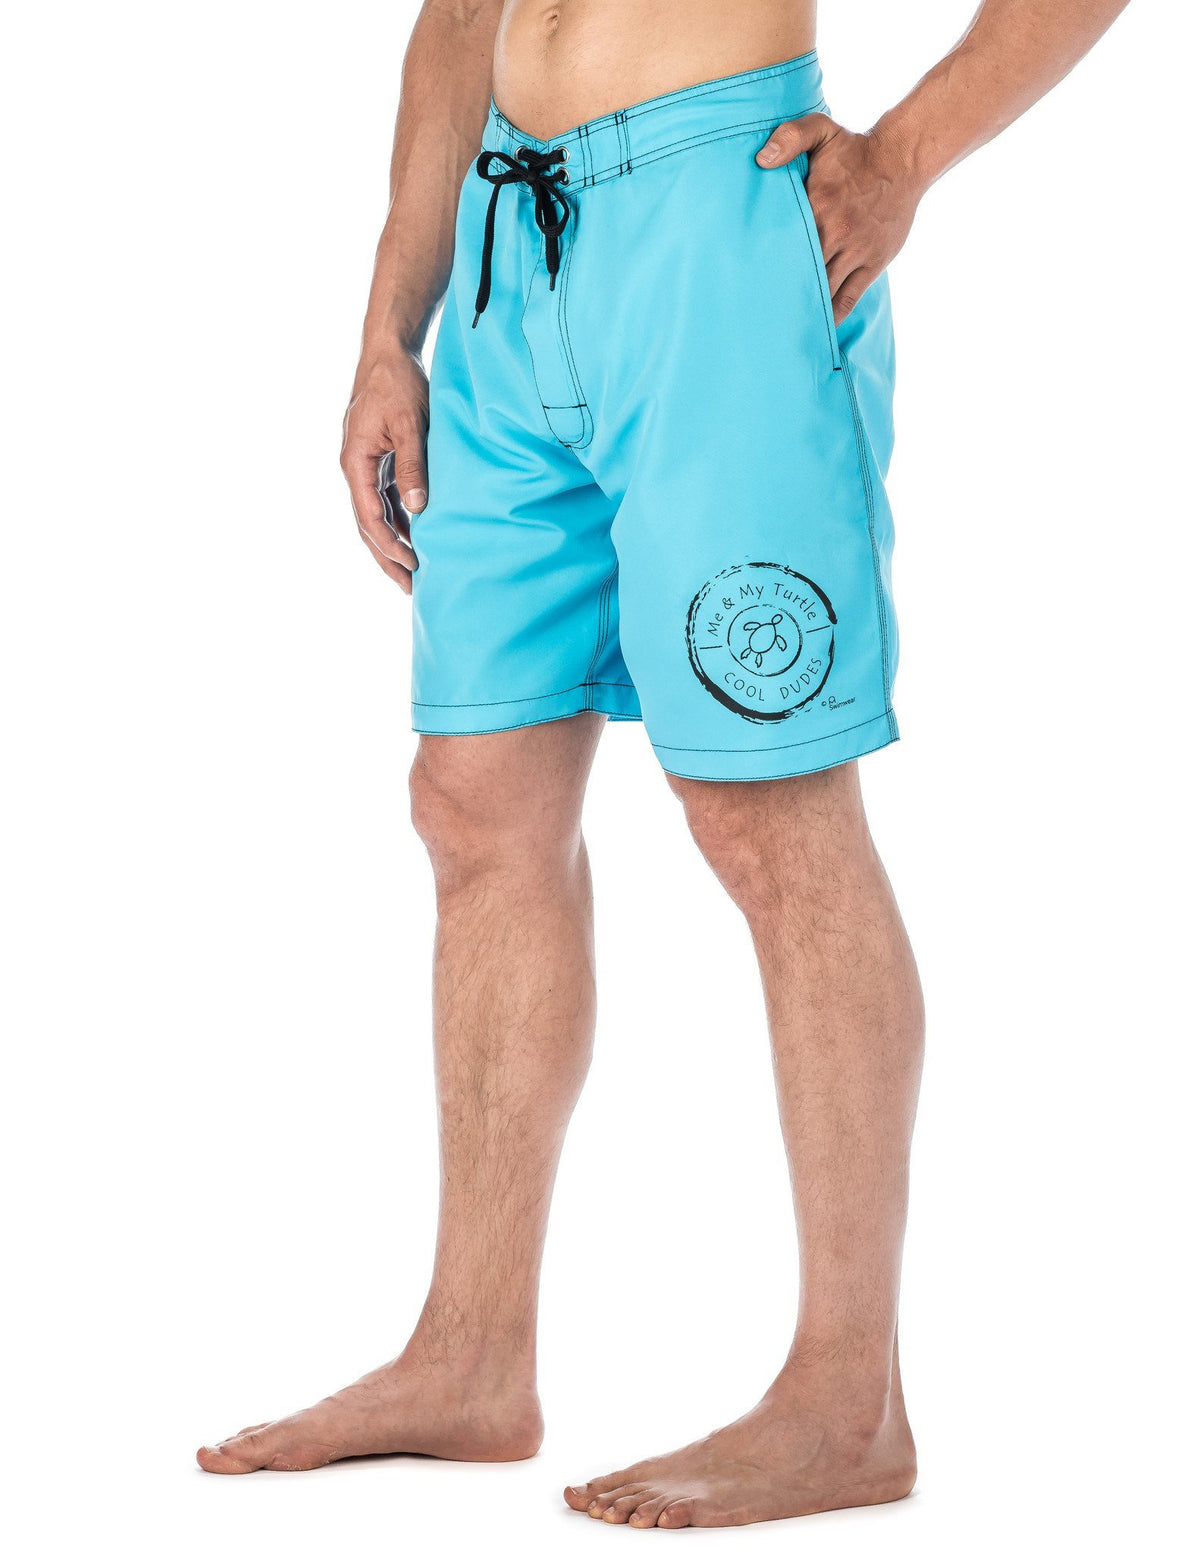 Men's Premium Swim Boardshorts - With Beach Attitude Stamps - Cool Dudes - Aqua/Black